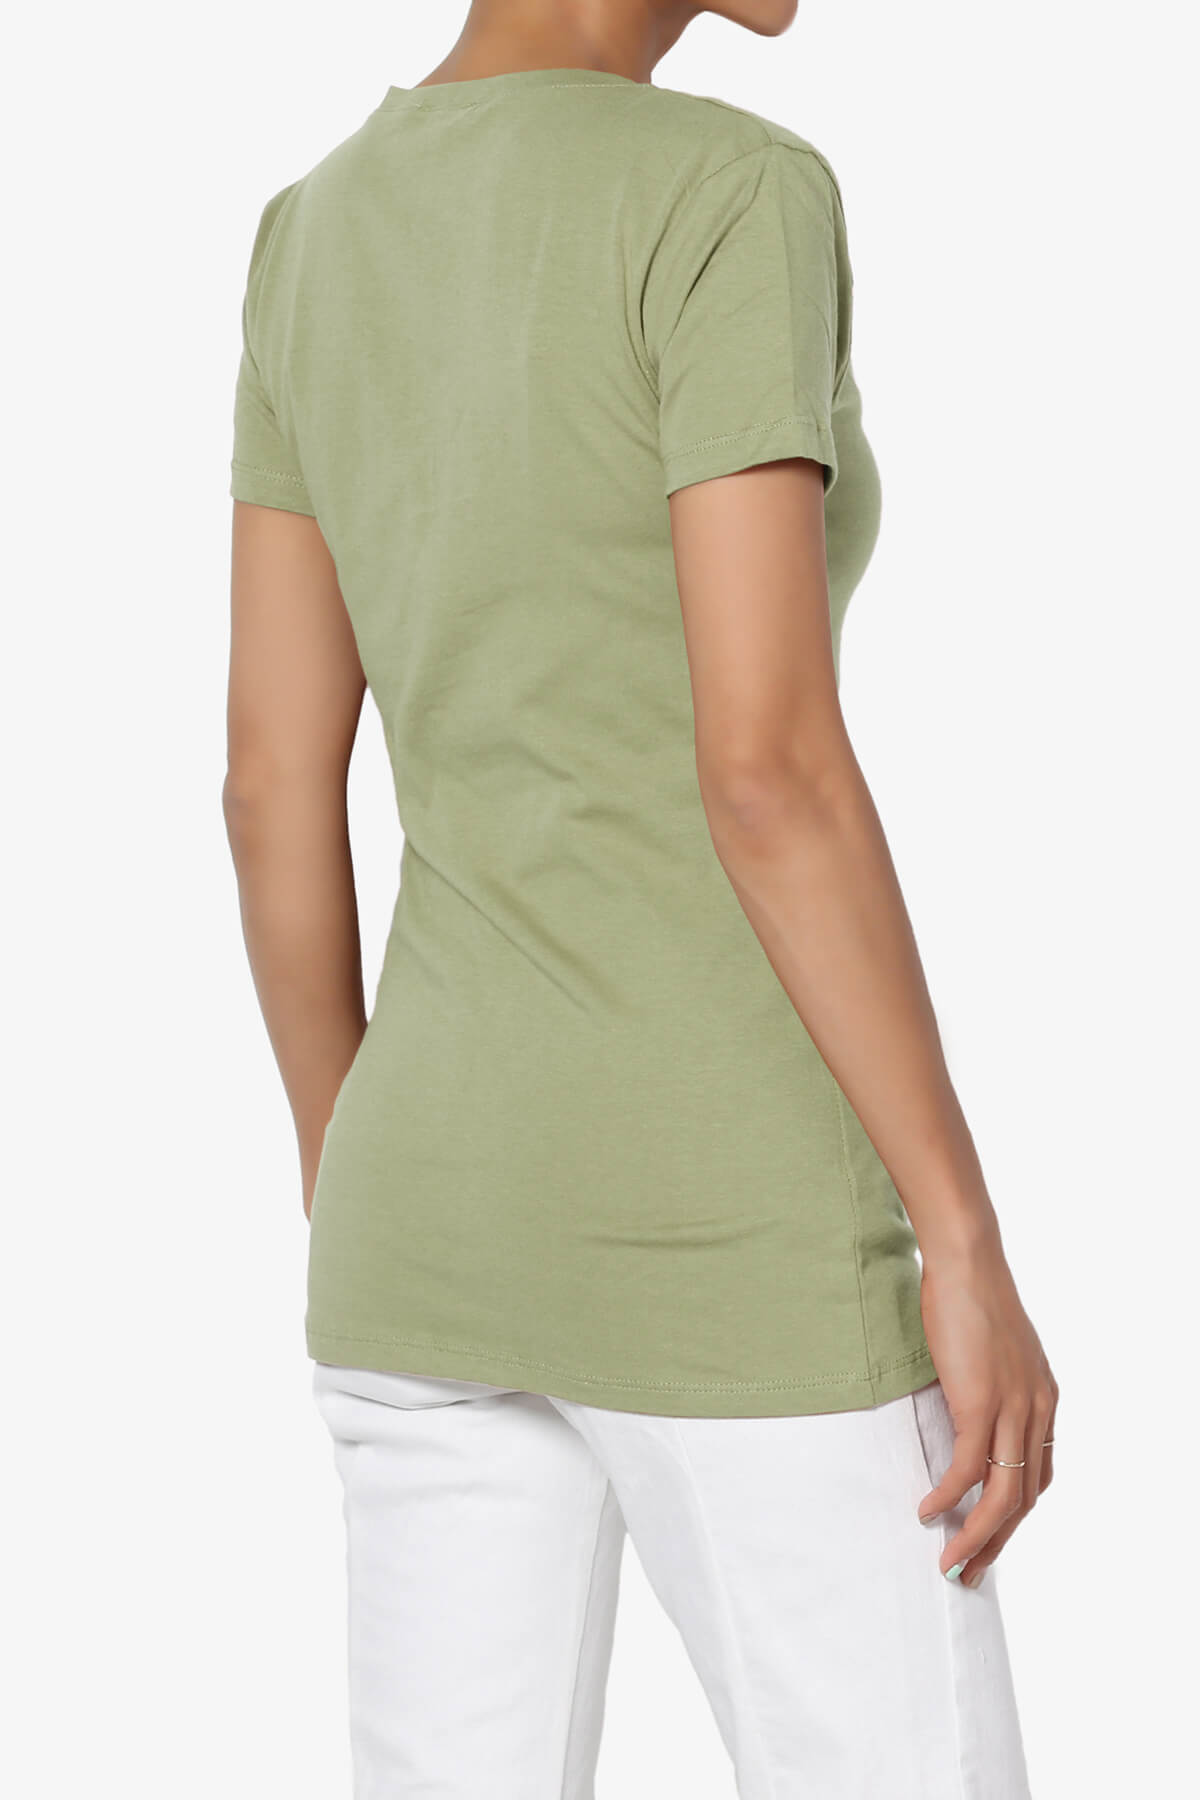 Candela V-Neck Short Sleeve T-Shirts SAGE_4